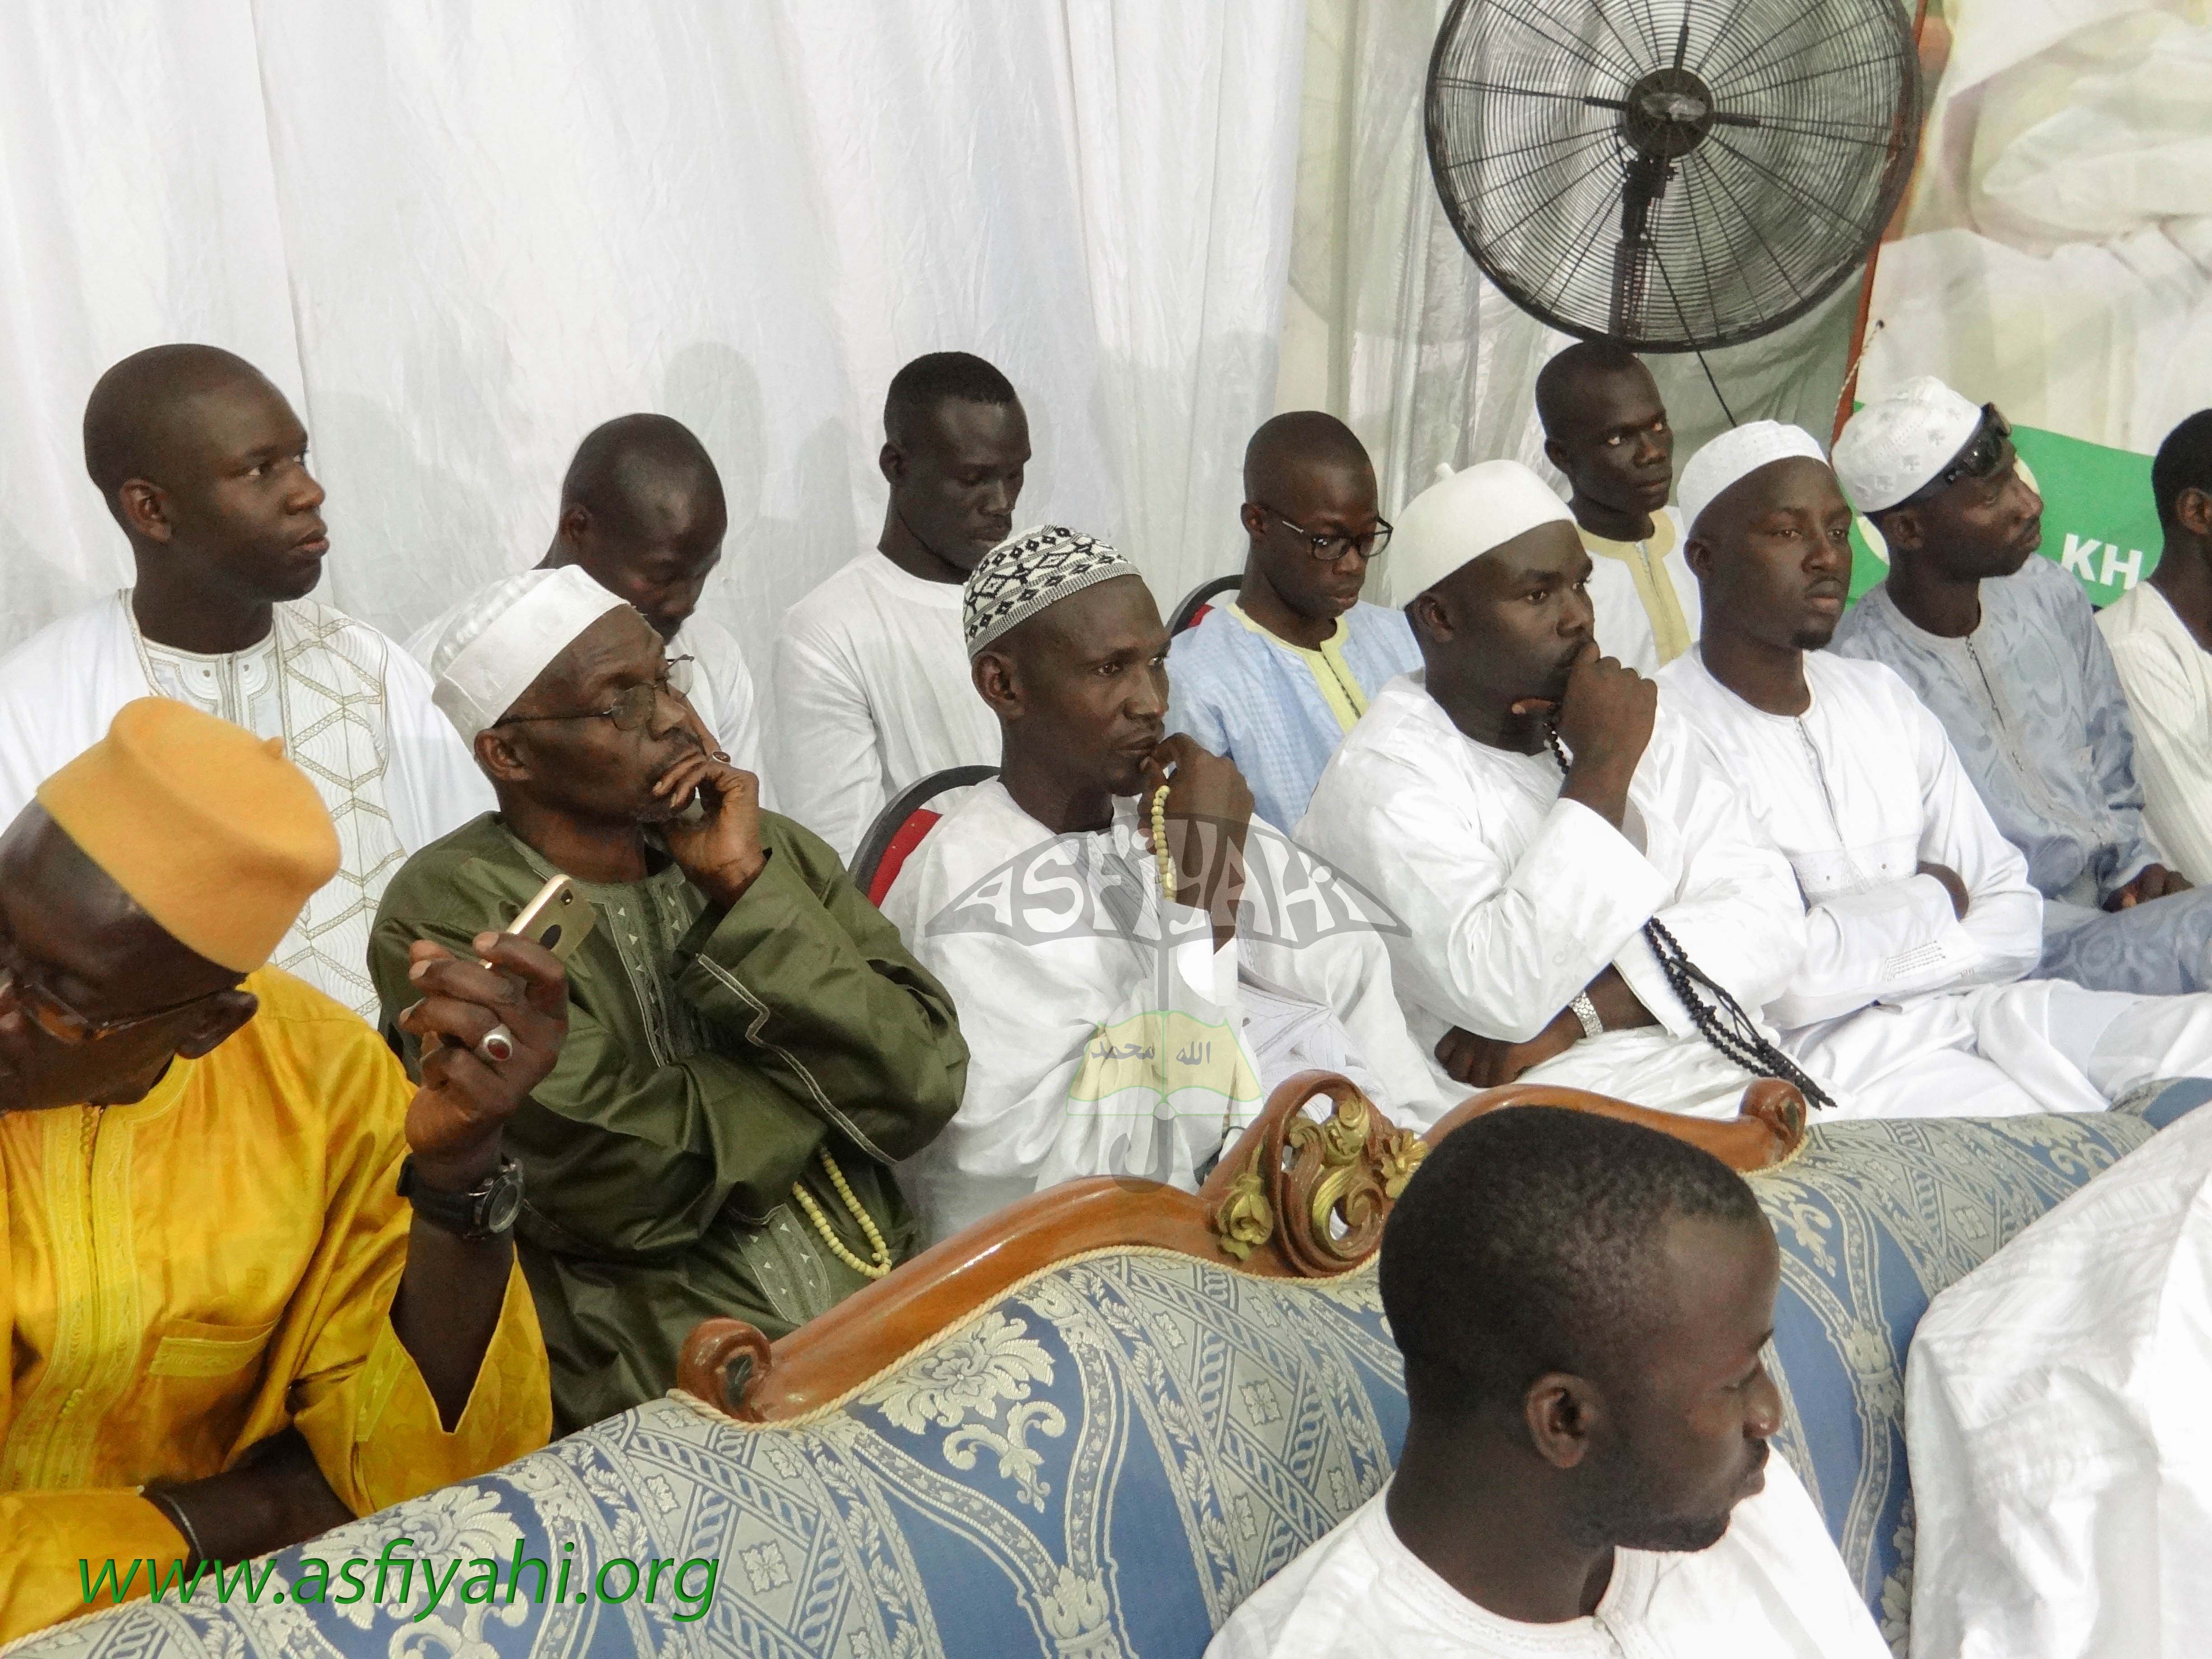 PHOTOS : Les images de la conférence de la Dahira Khayri Wal Minaty de Baobab, samedi 25 juillet 2015